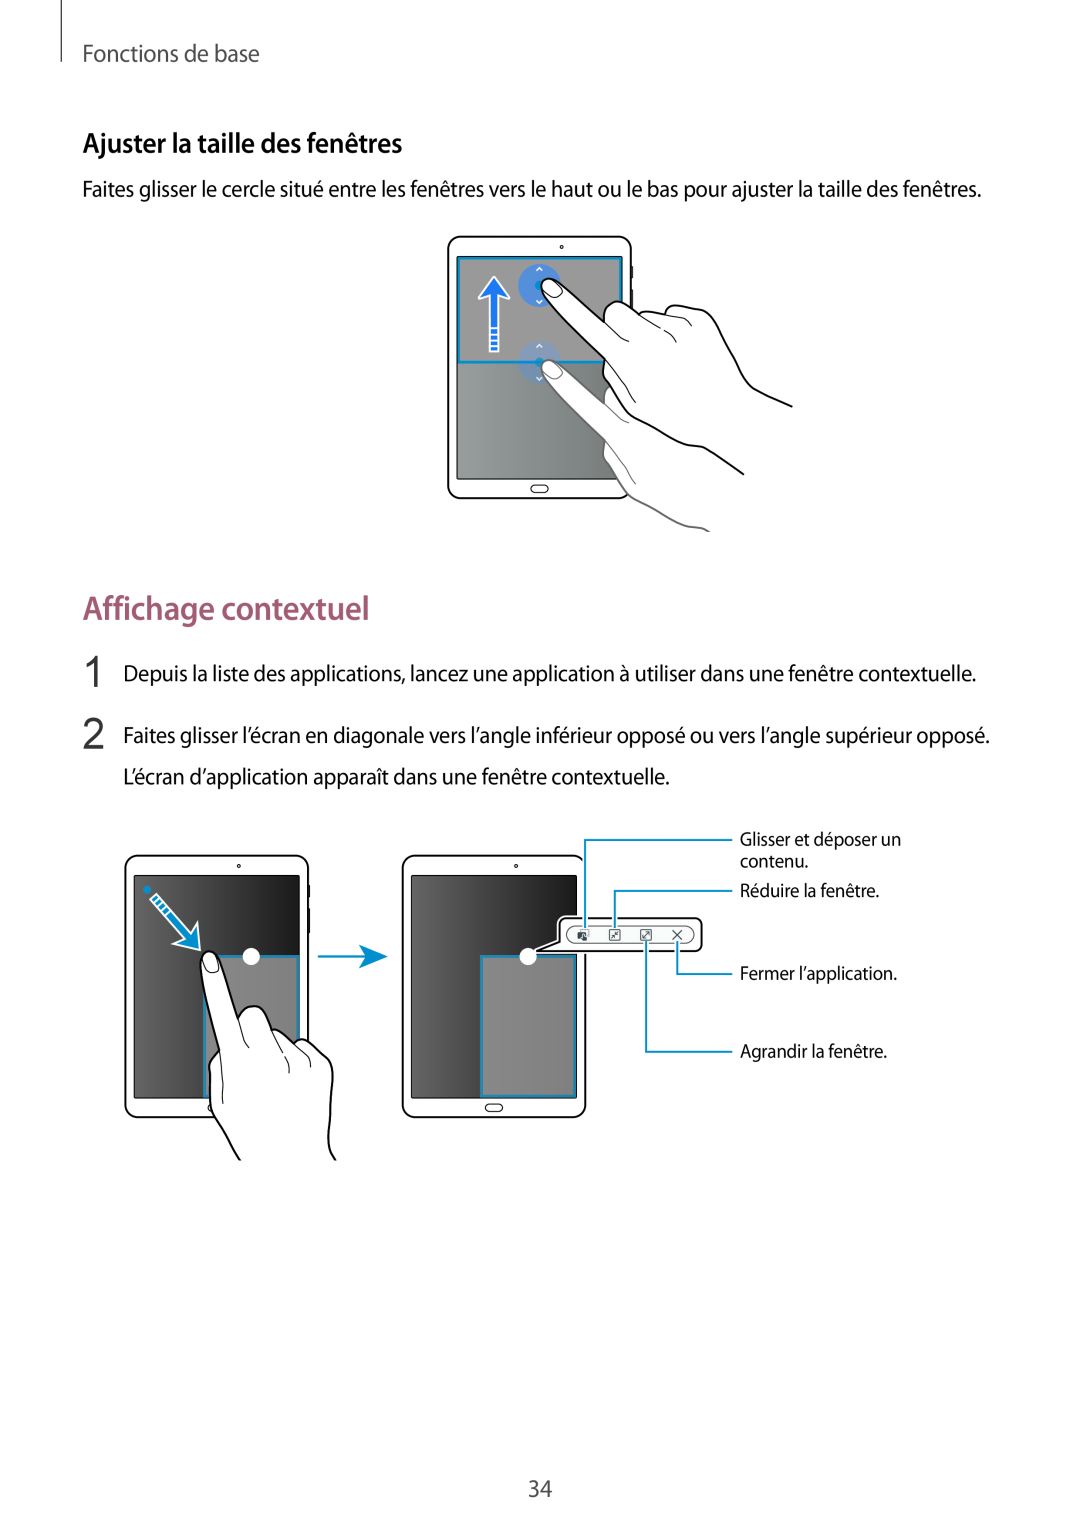 Samsung SM-T810NZWEXEF, SM-T810NZDEXEF manual Affichage contextuel, Ajuster la taille des fenêtres, Fonctions de base 